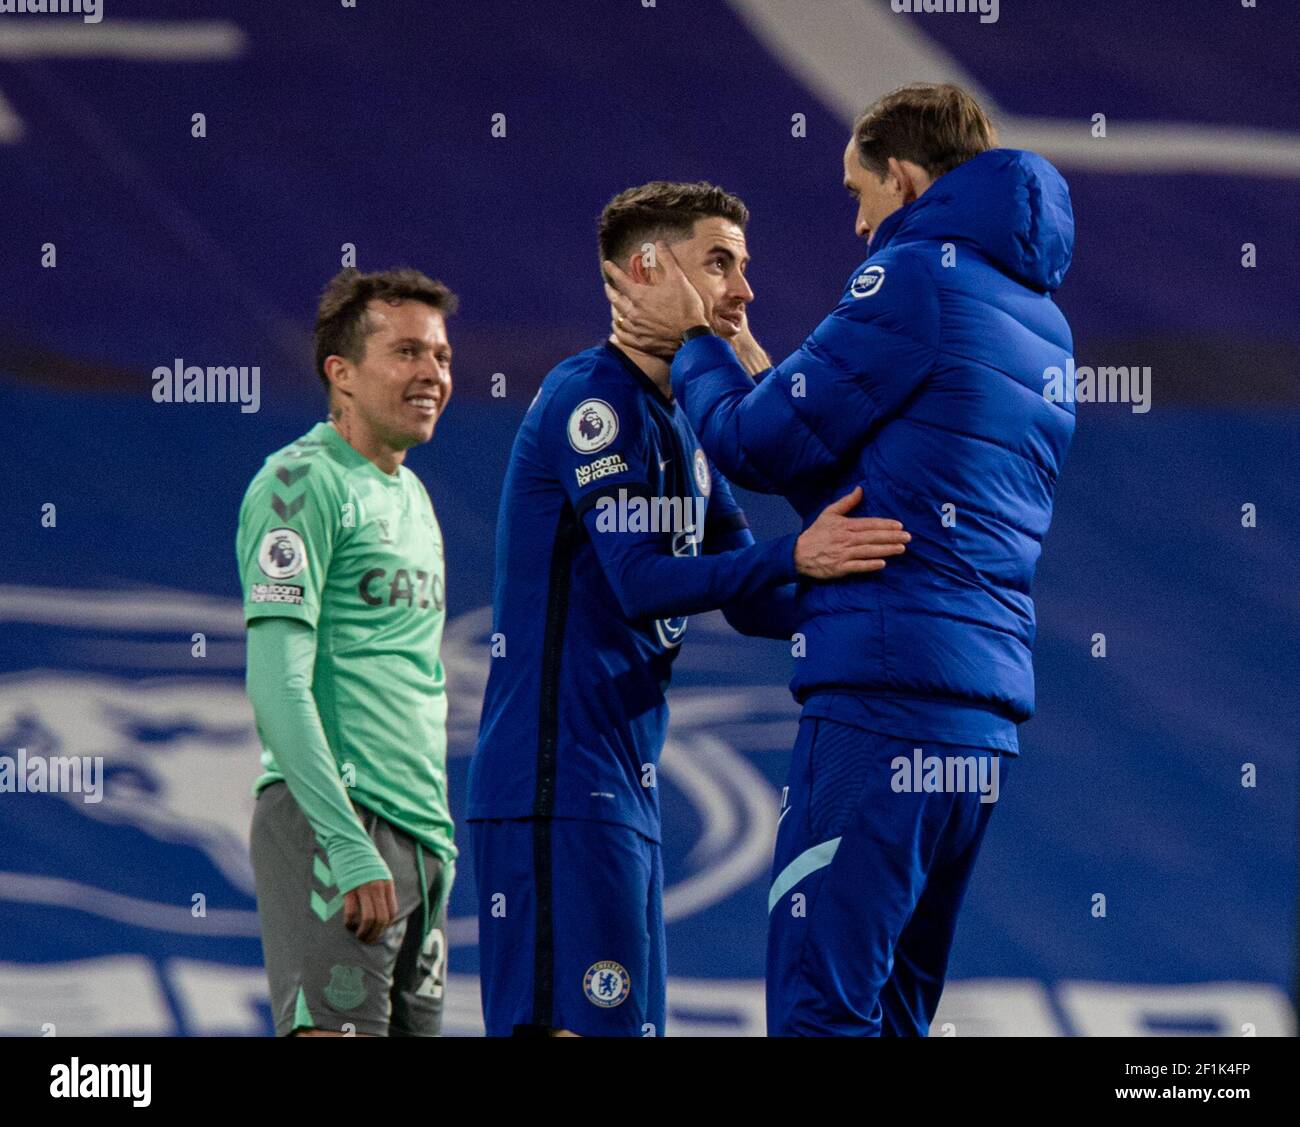 210309) -- LONDRA, 9 marzo 2021 (Xinhua) -- il manager di Chelsea Thomas  Tuchel (R) festeggia con il marcatore Jorginho dopo la partita della  Premier League tra Chelsea ed Everton a Stamford